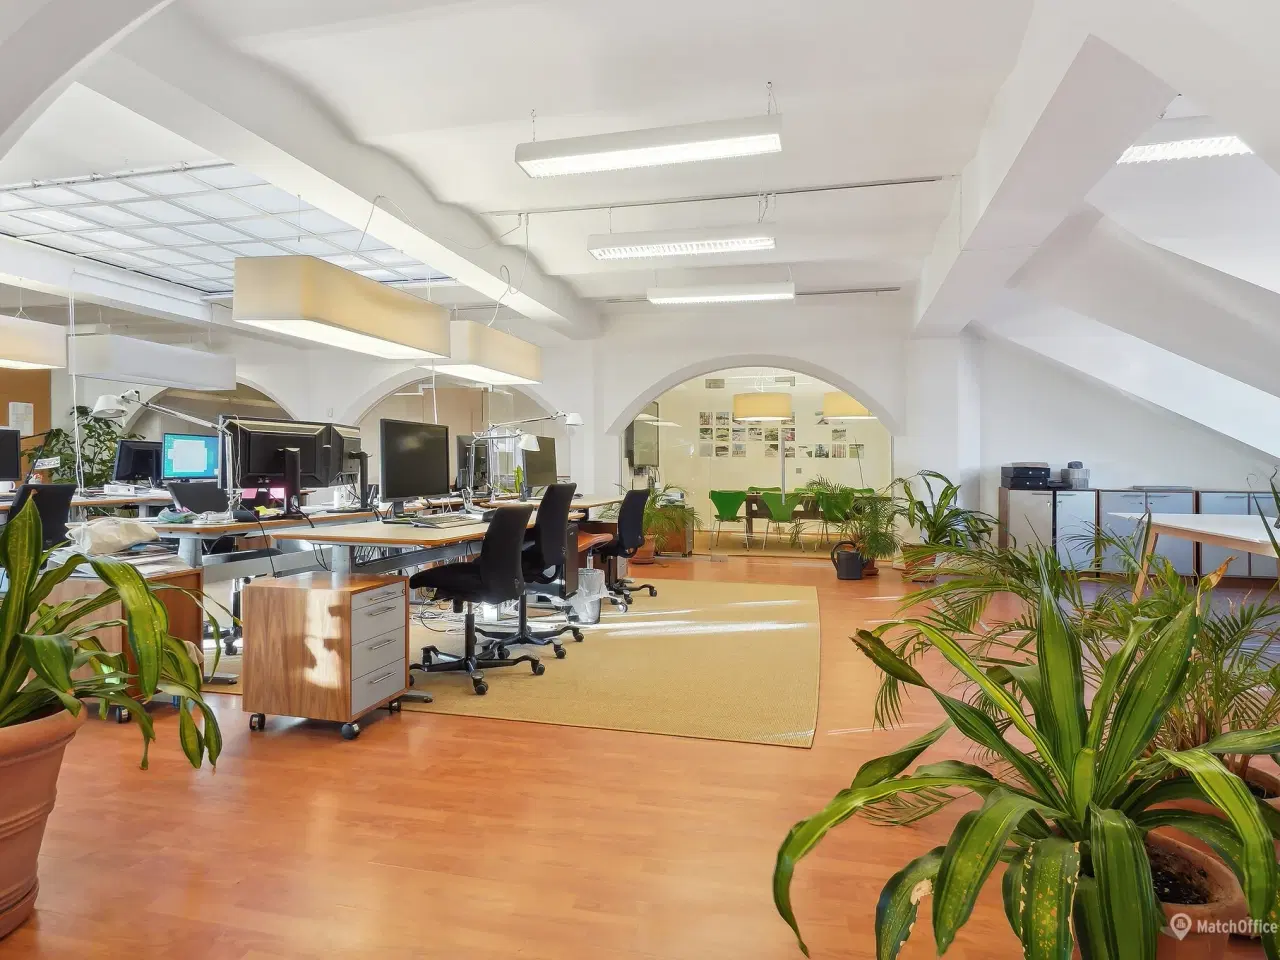 Billede 7 - 339 m² storrumskontor med flere kontorer og mødelokaler udlejes i Kongensgade i Odense City